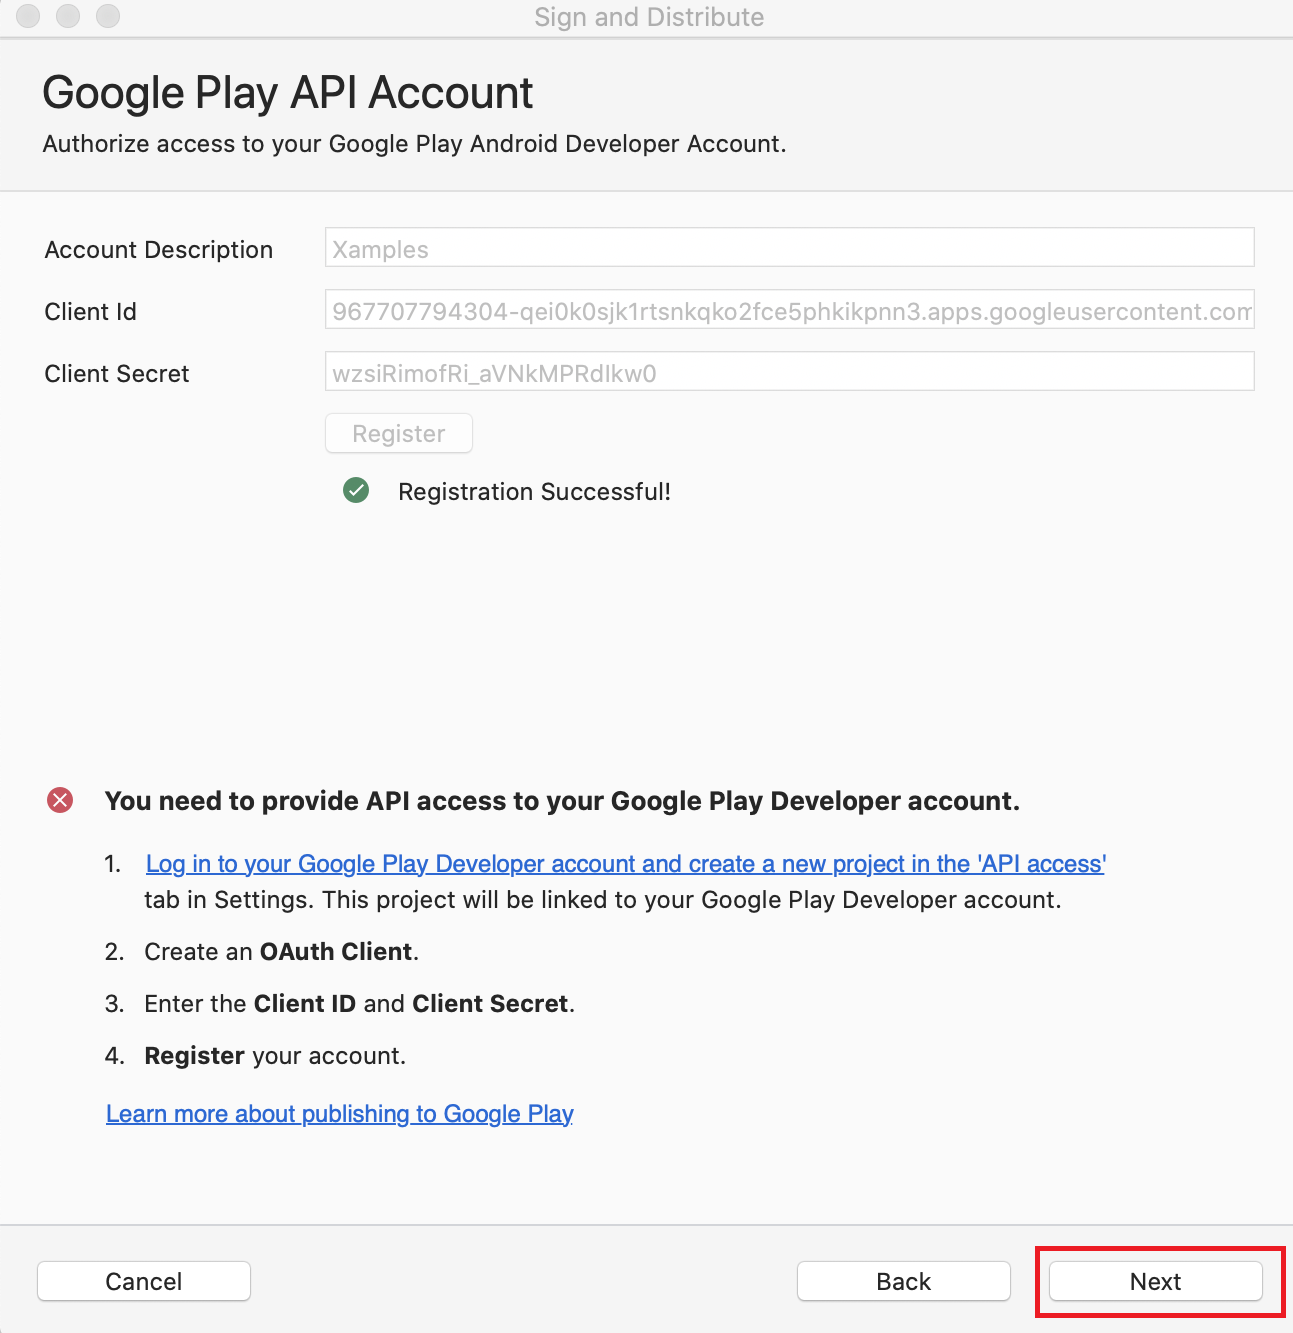 Assinatura  Prime, a assinatura está vinculada ao google play, mas  está inexistente - Comunidade Google Play